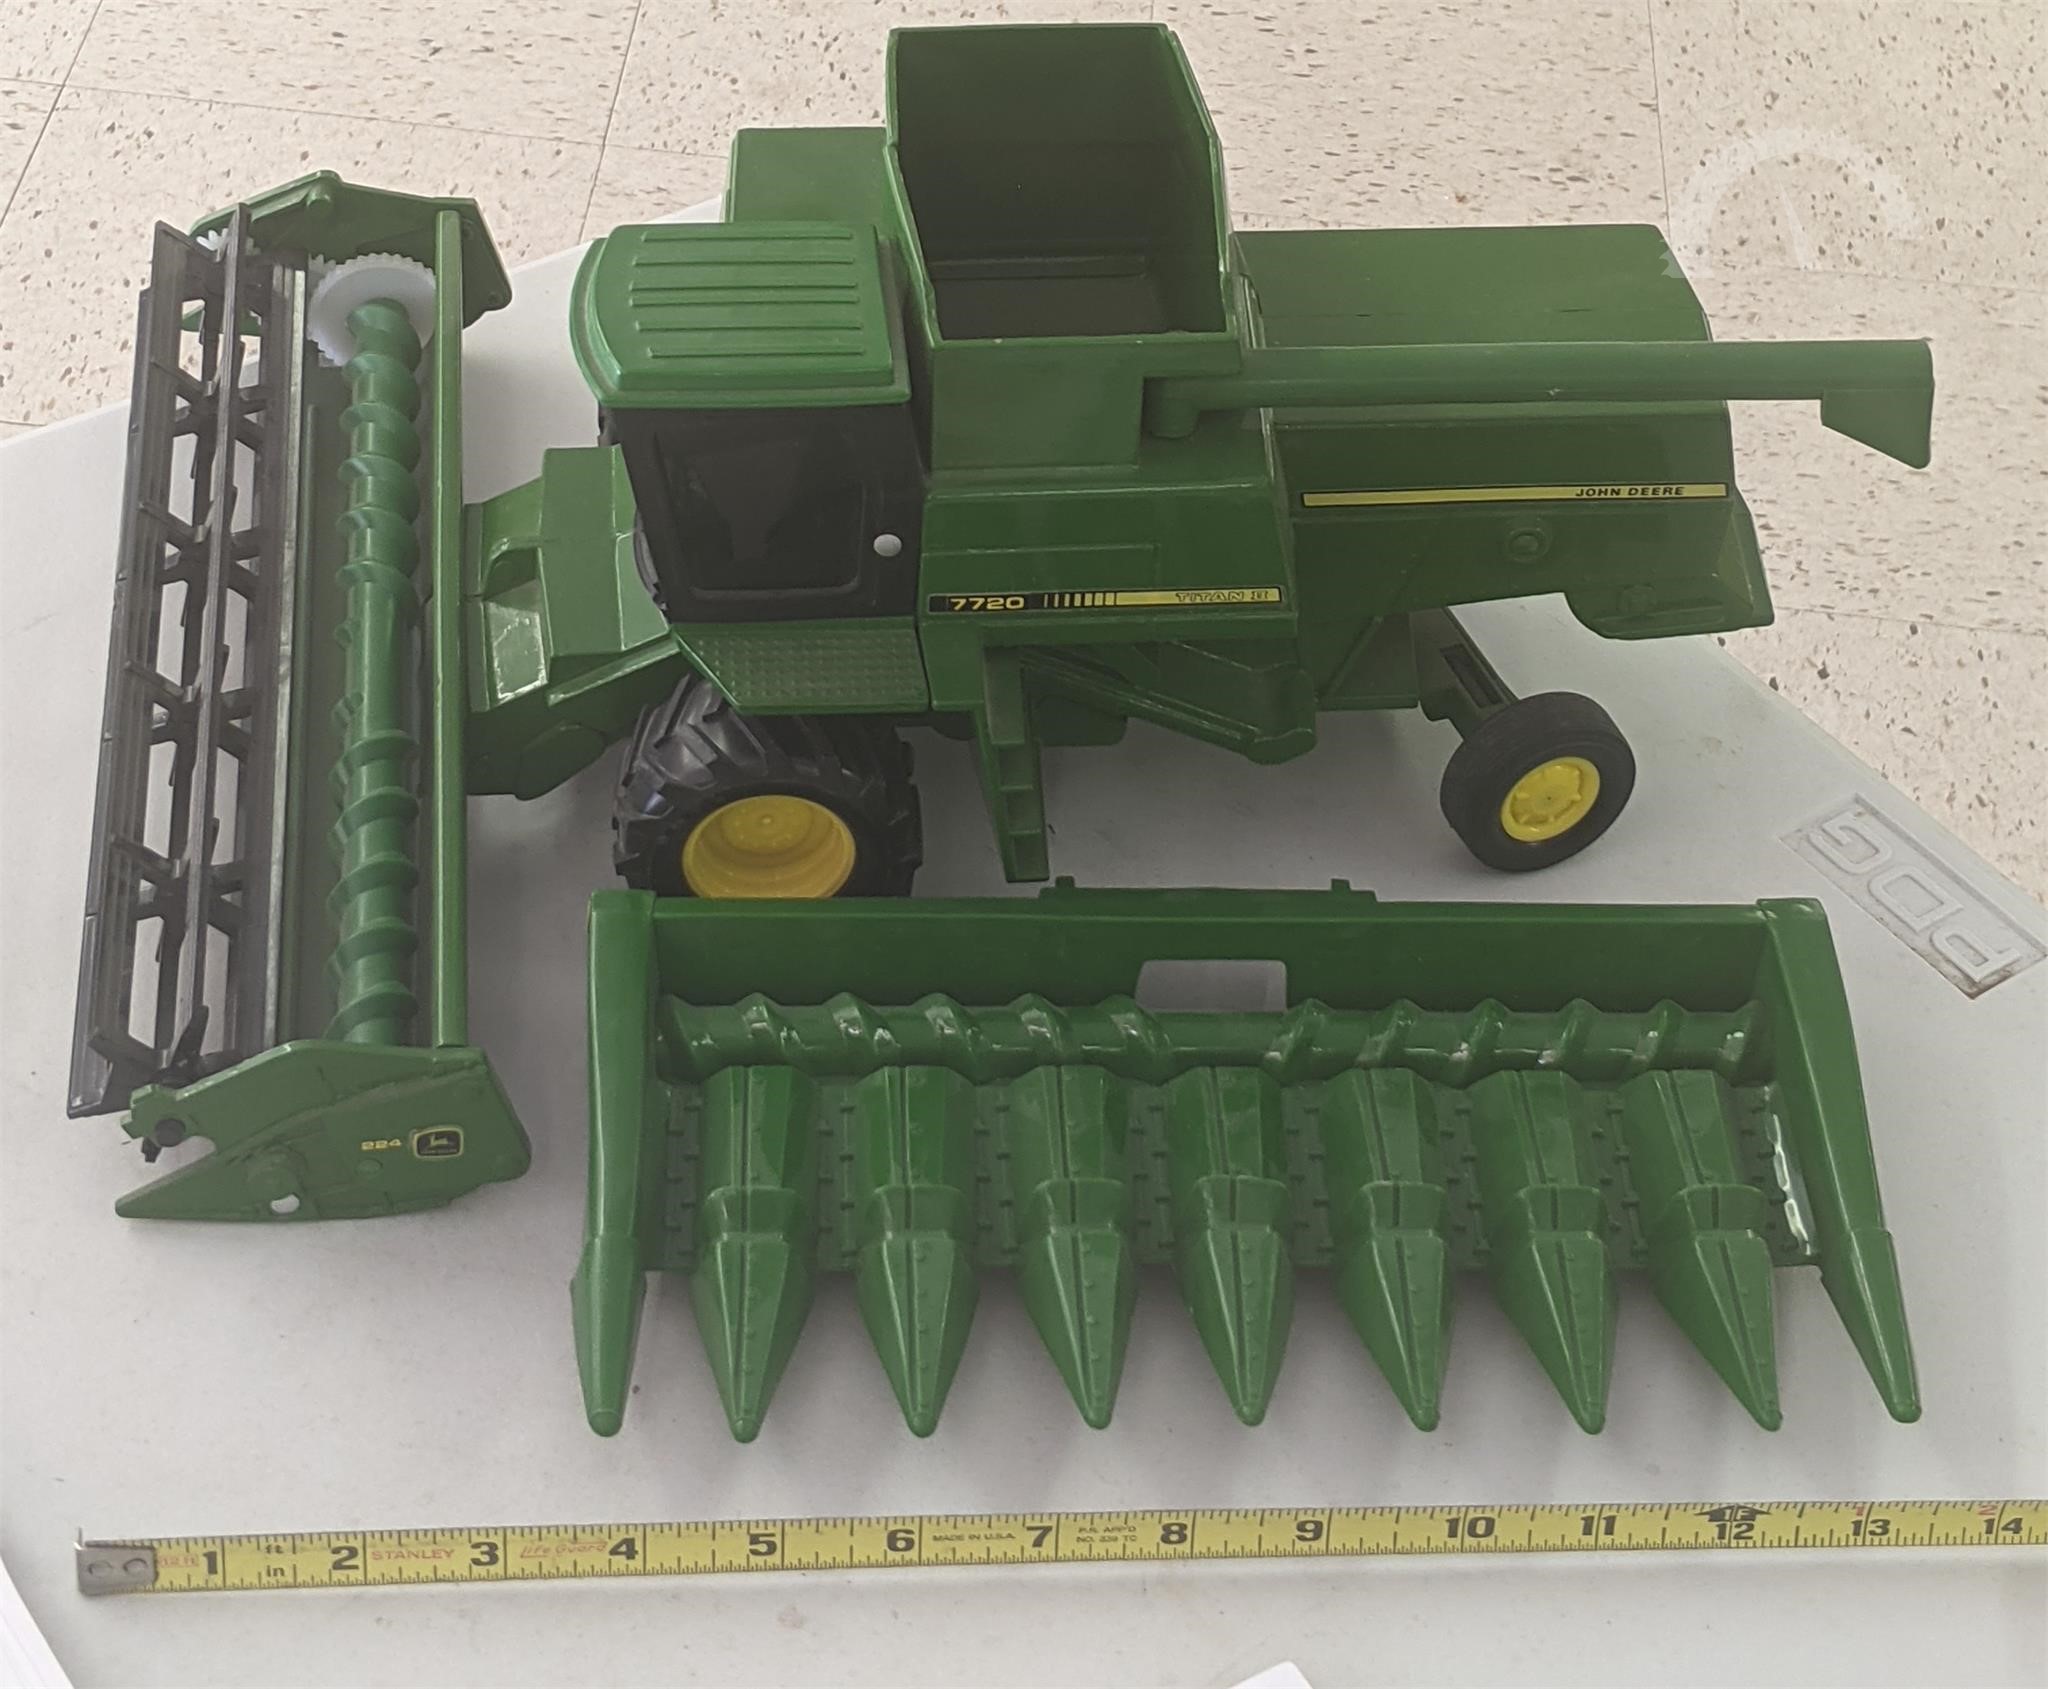 1/64 ERTL custom John deere styled model A "on steel"  tractor farm toy 